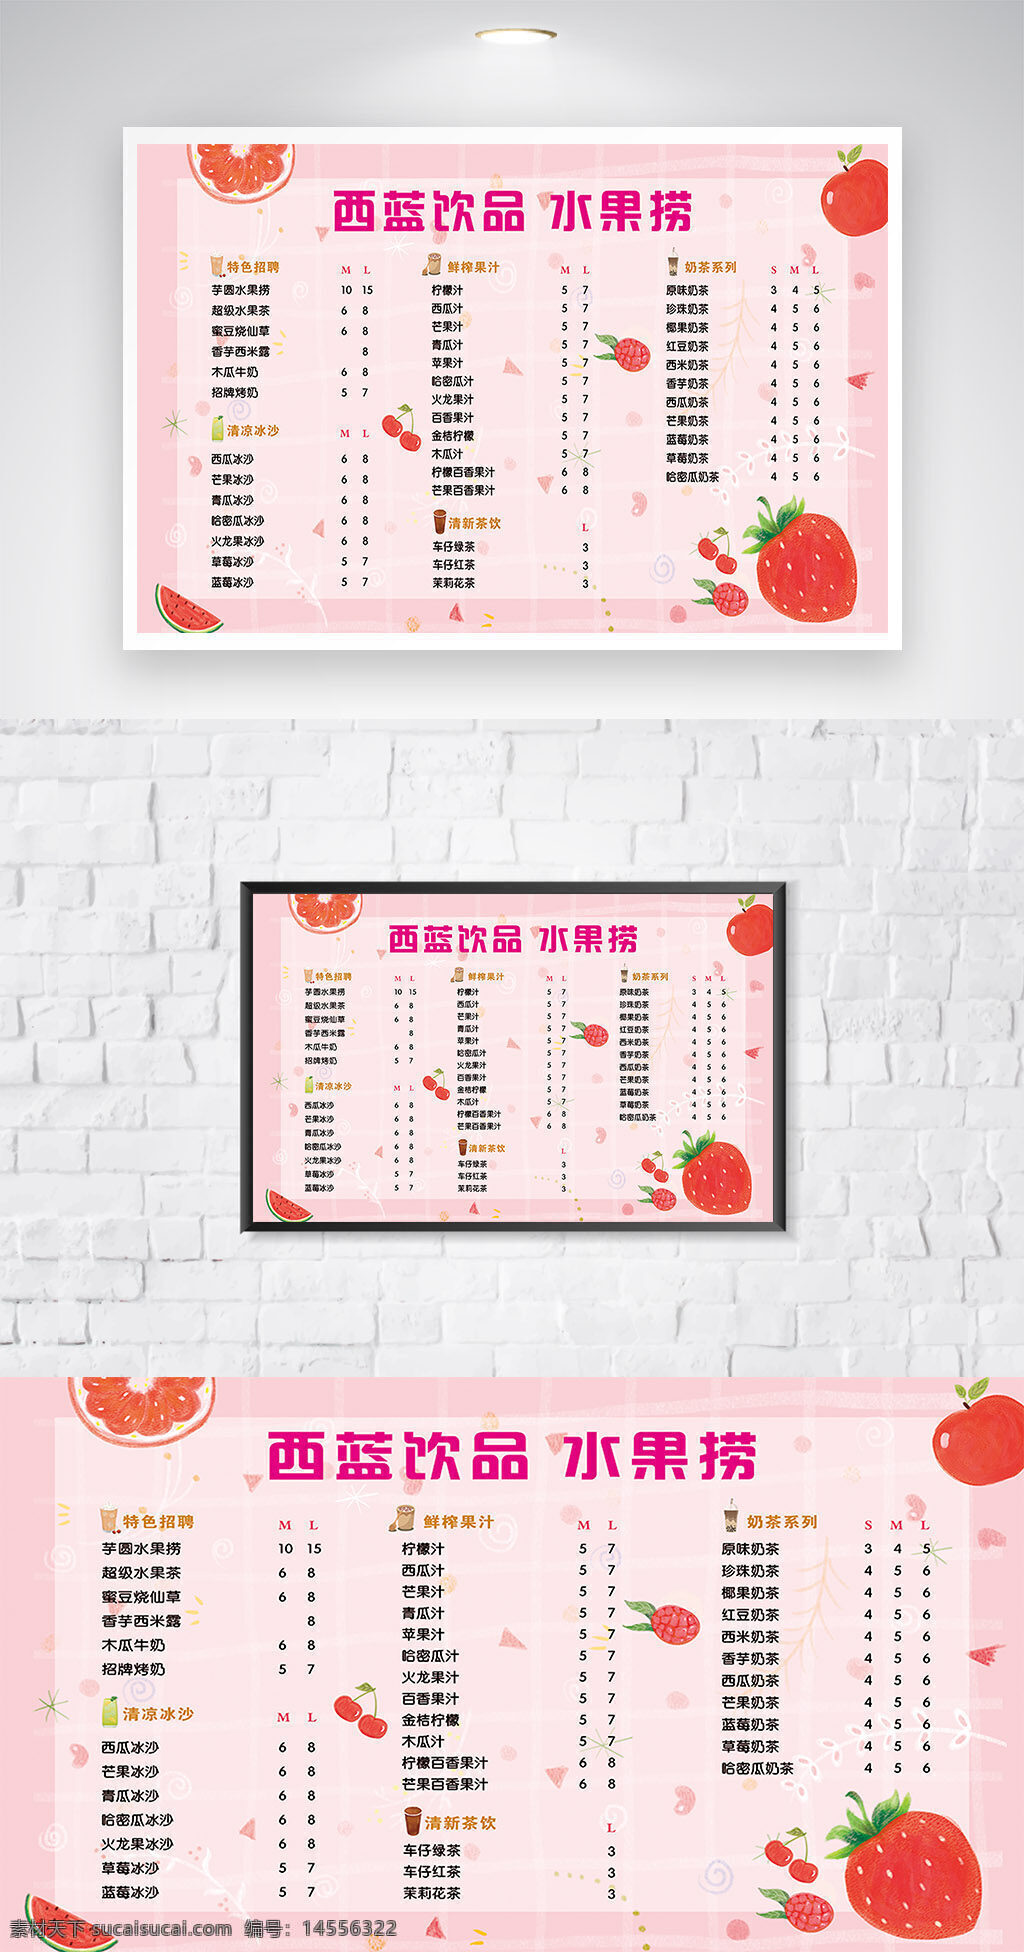 水果捞菜单图片 甜品 水果捞 菜单 美食 水果 饮品 价格表 甜点 简约 粉红菜单